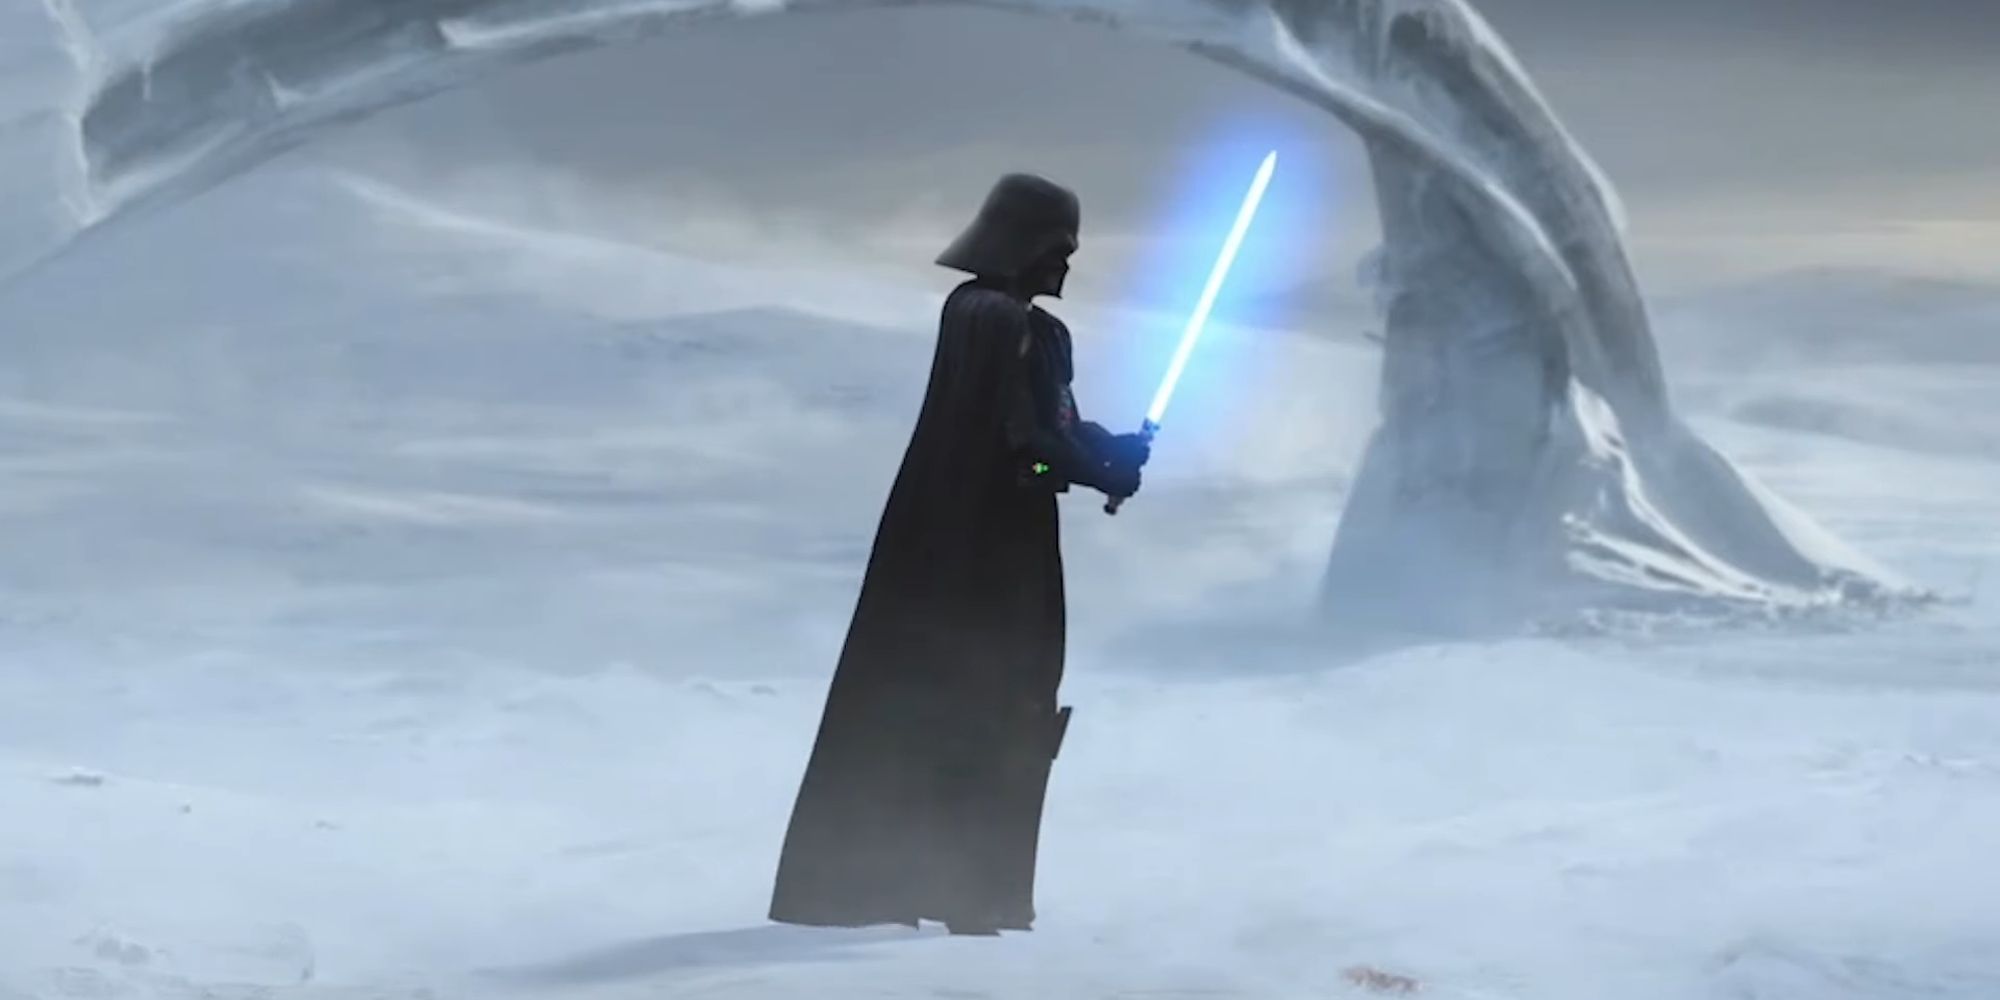 Darth Vader empunhando o sabre de luz de Ahsoka Tano em Star Wars The Clone Wars